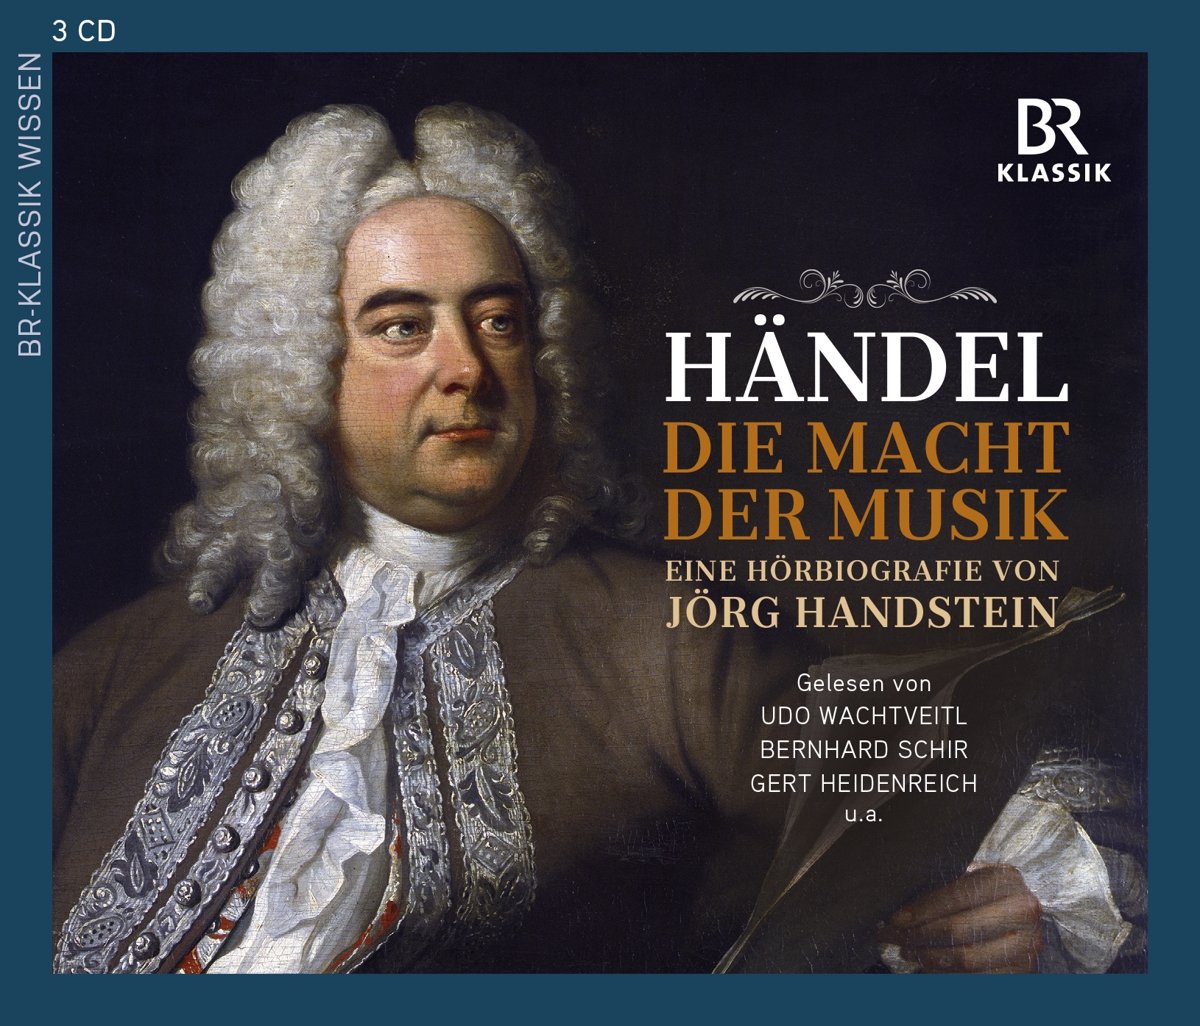 Audio Cd Georg Friedrich Handel - Die Macht Der Musik (3 Cd) NUOVO SIGILLATO, EDIZIONE DEL 05/01/2016 SUBITO DISPONIBILE